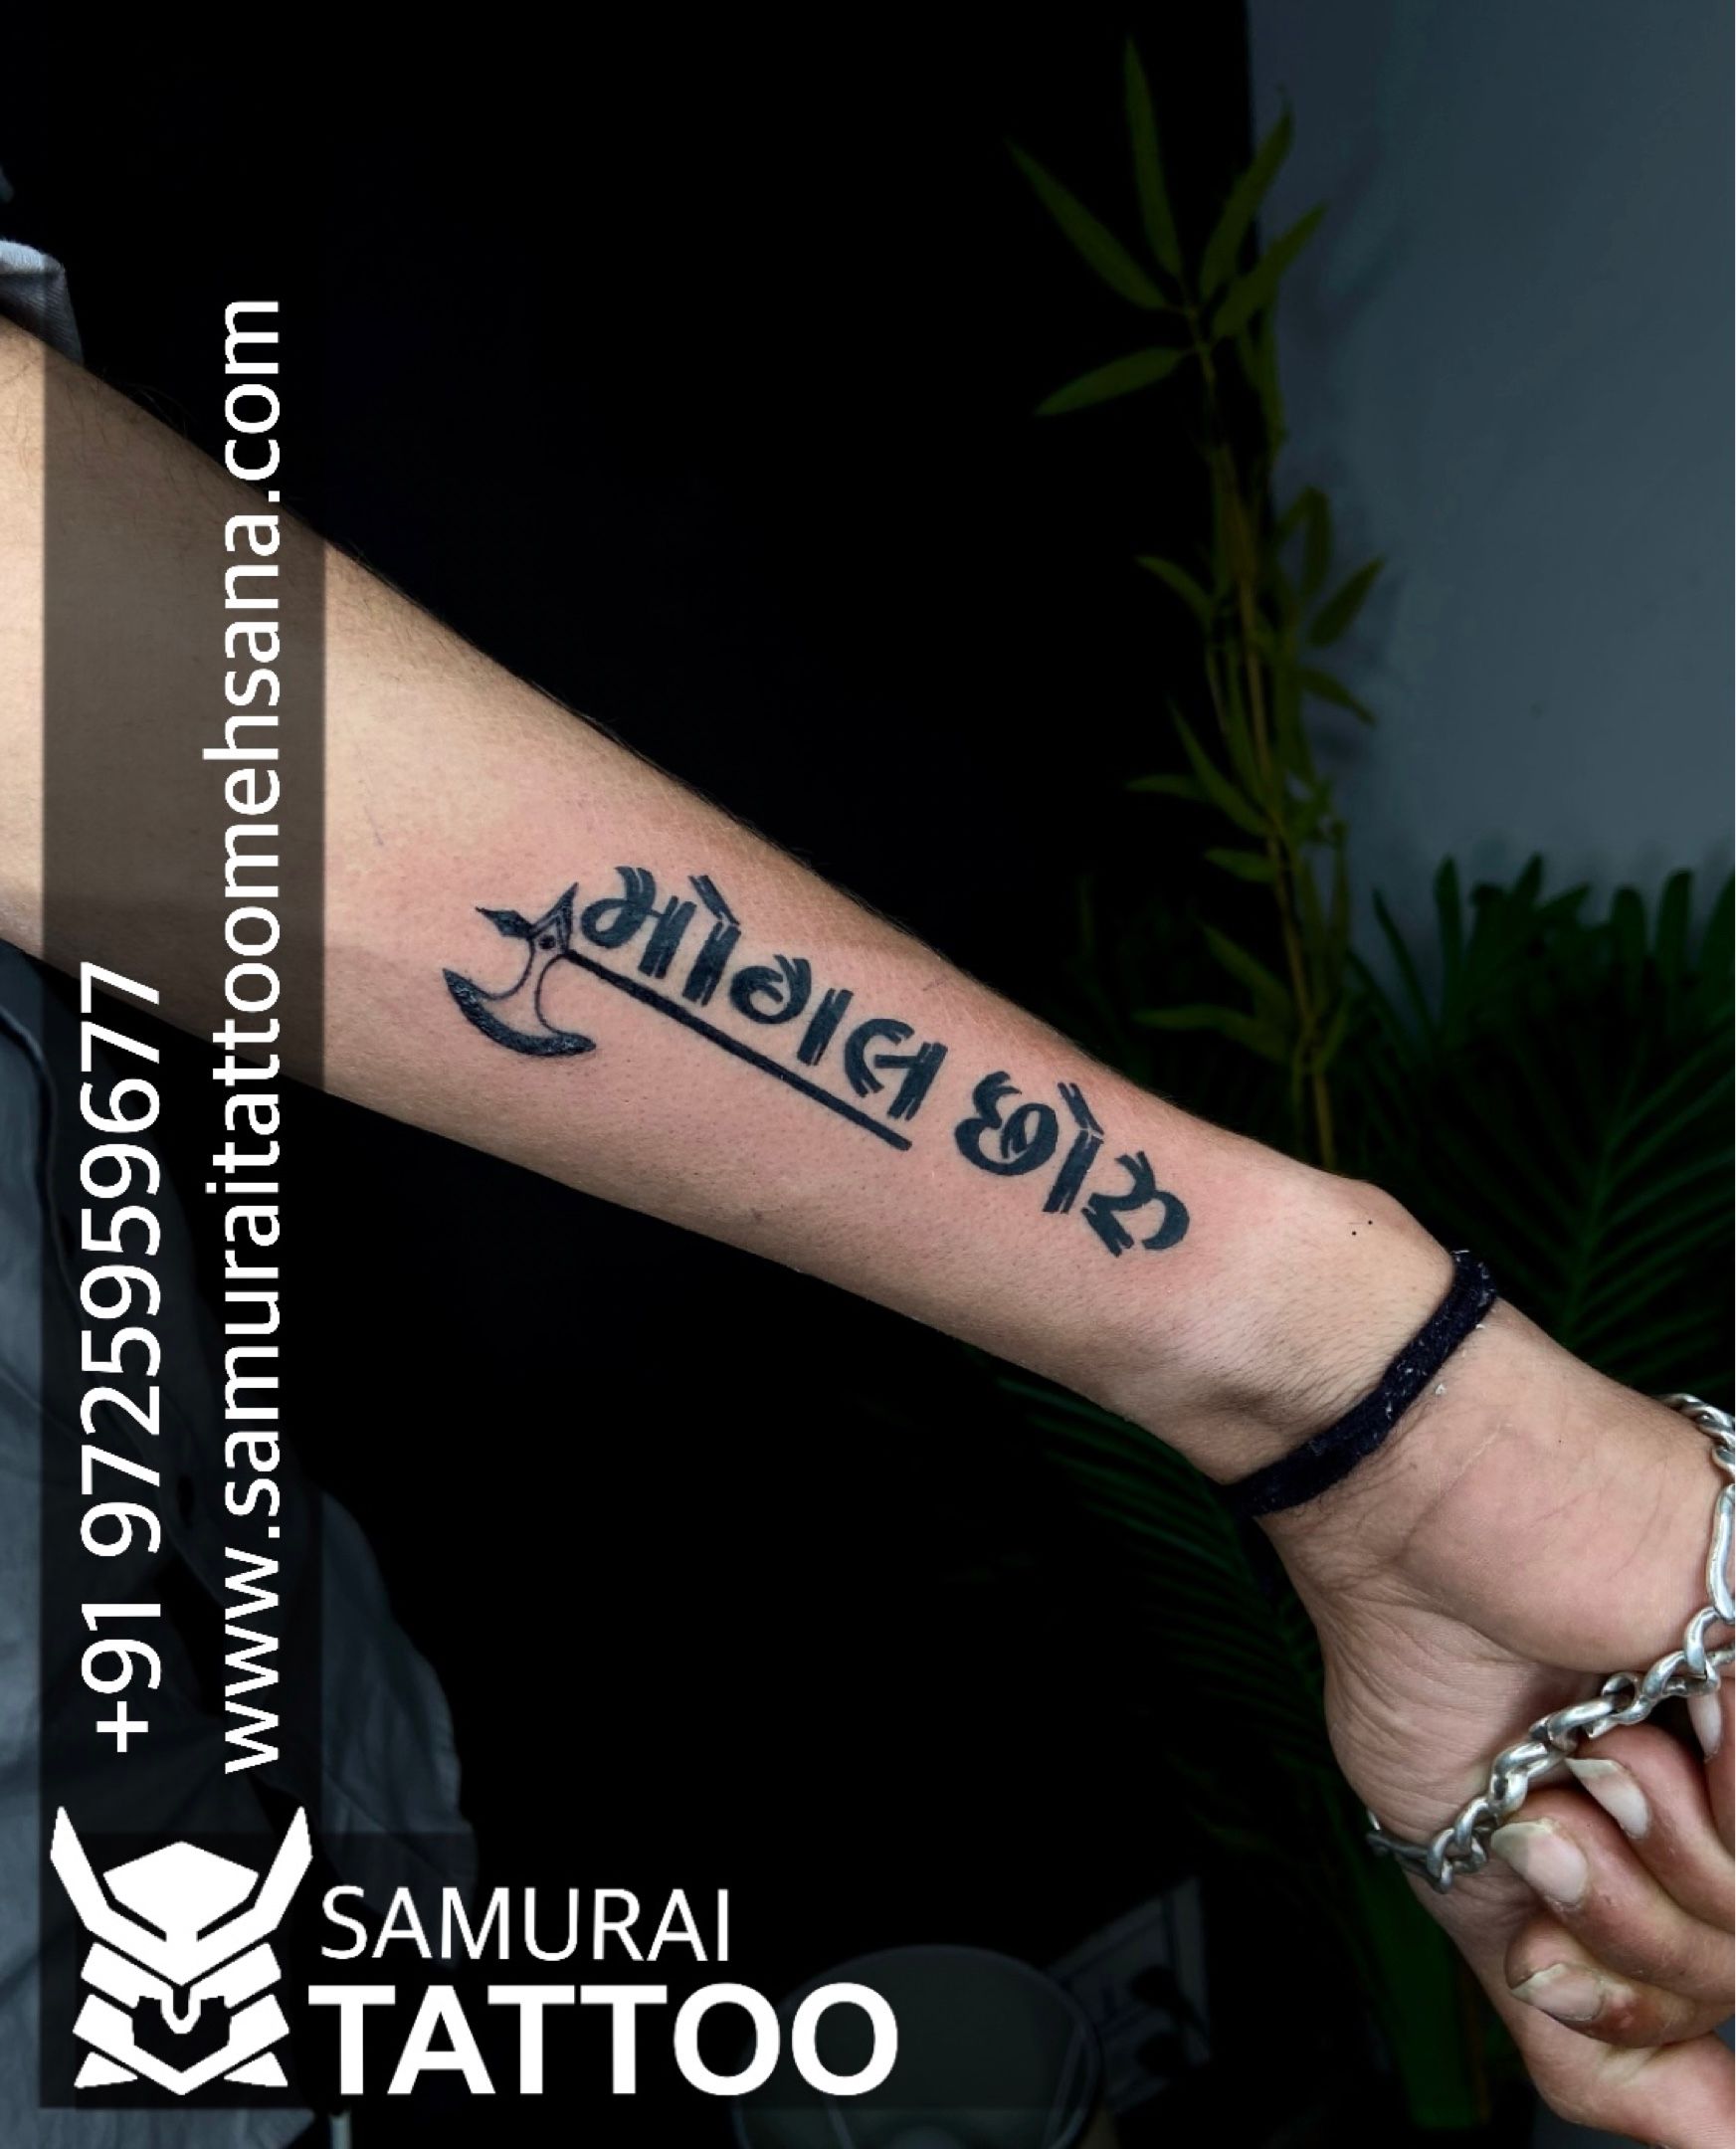 Mogal maa Tattoo || Tattoo designs || New Tattoo video 🙏 - YouTube